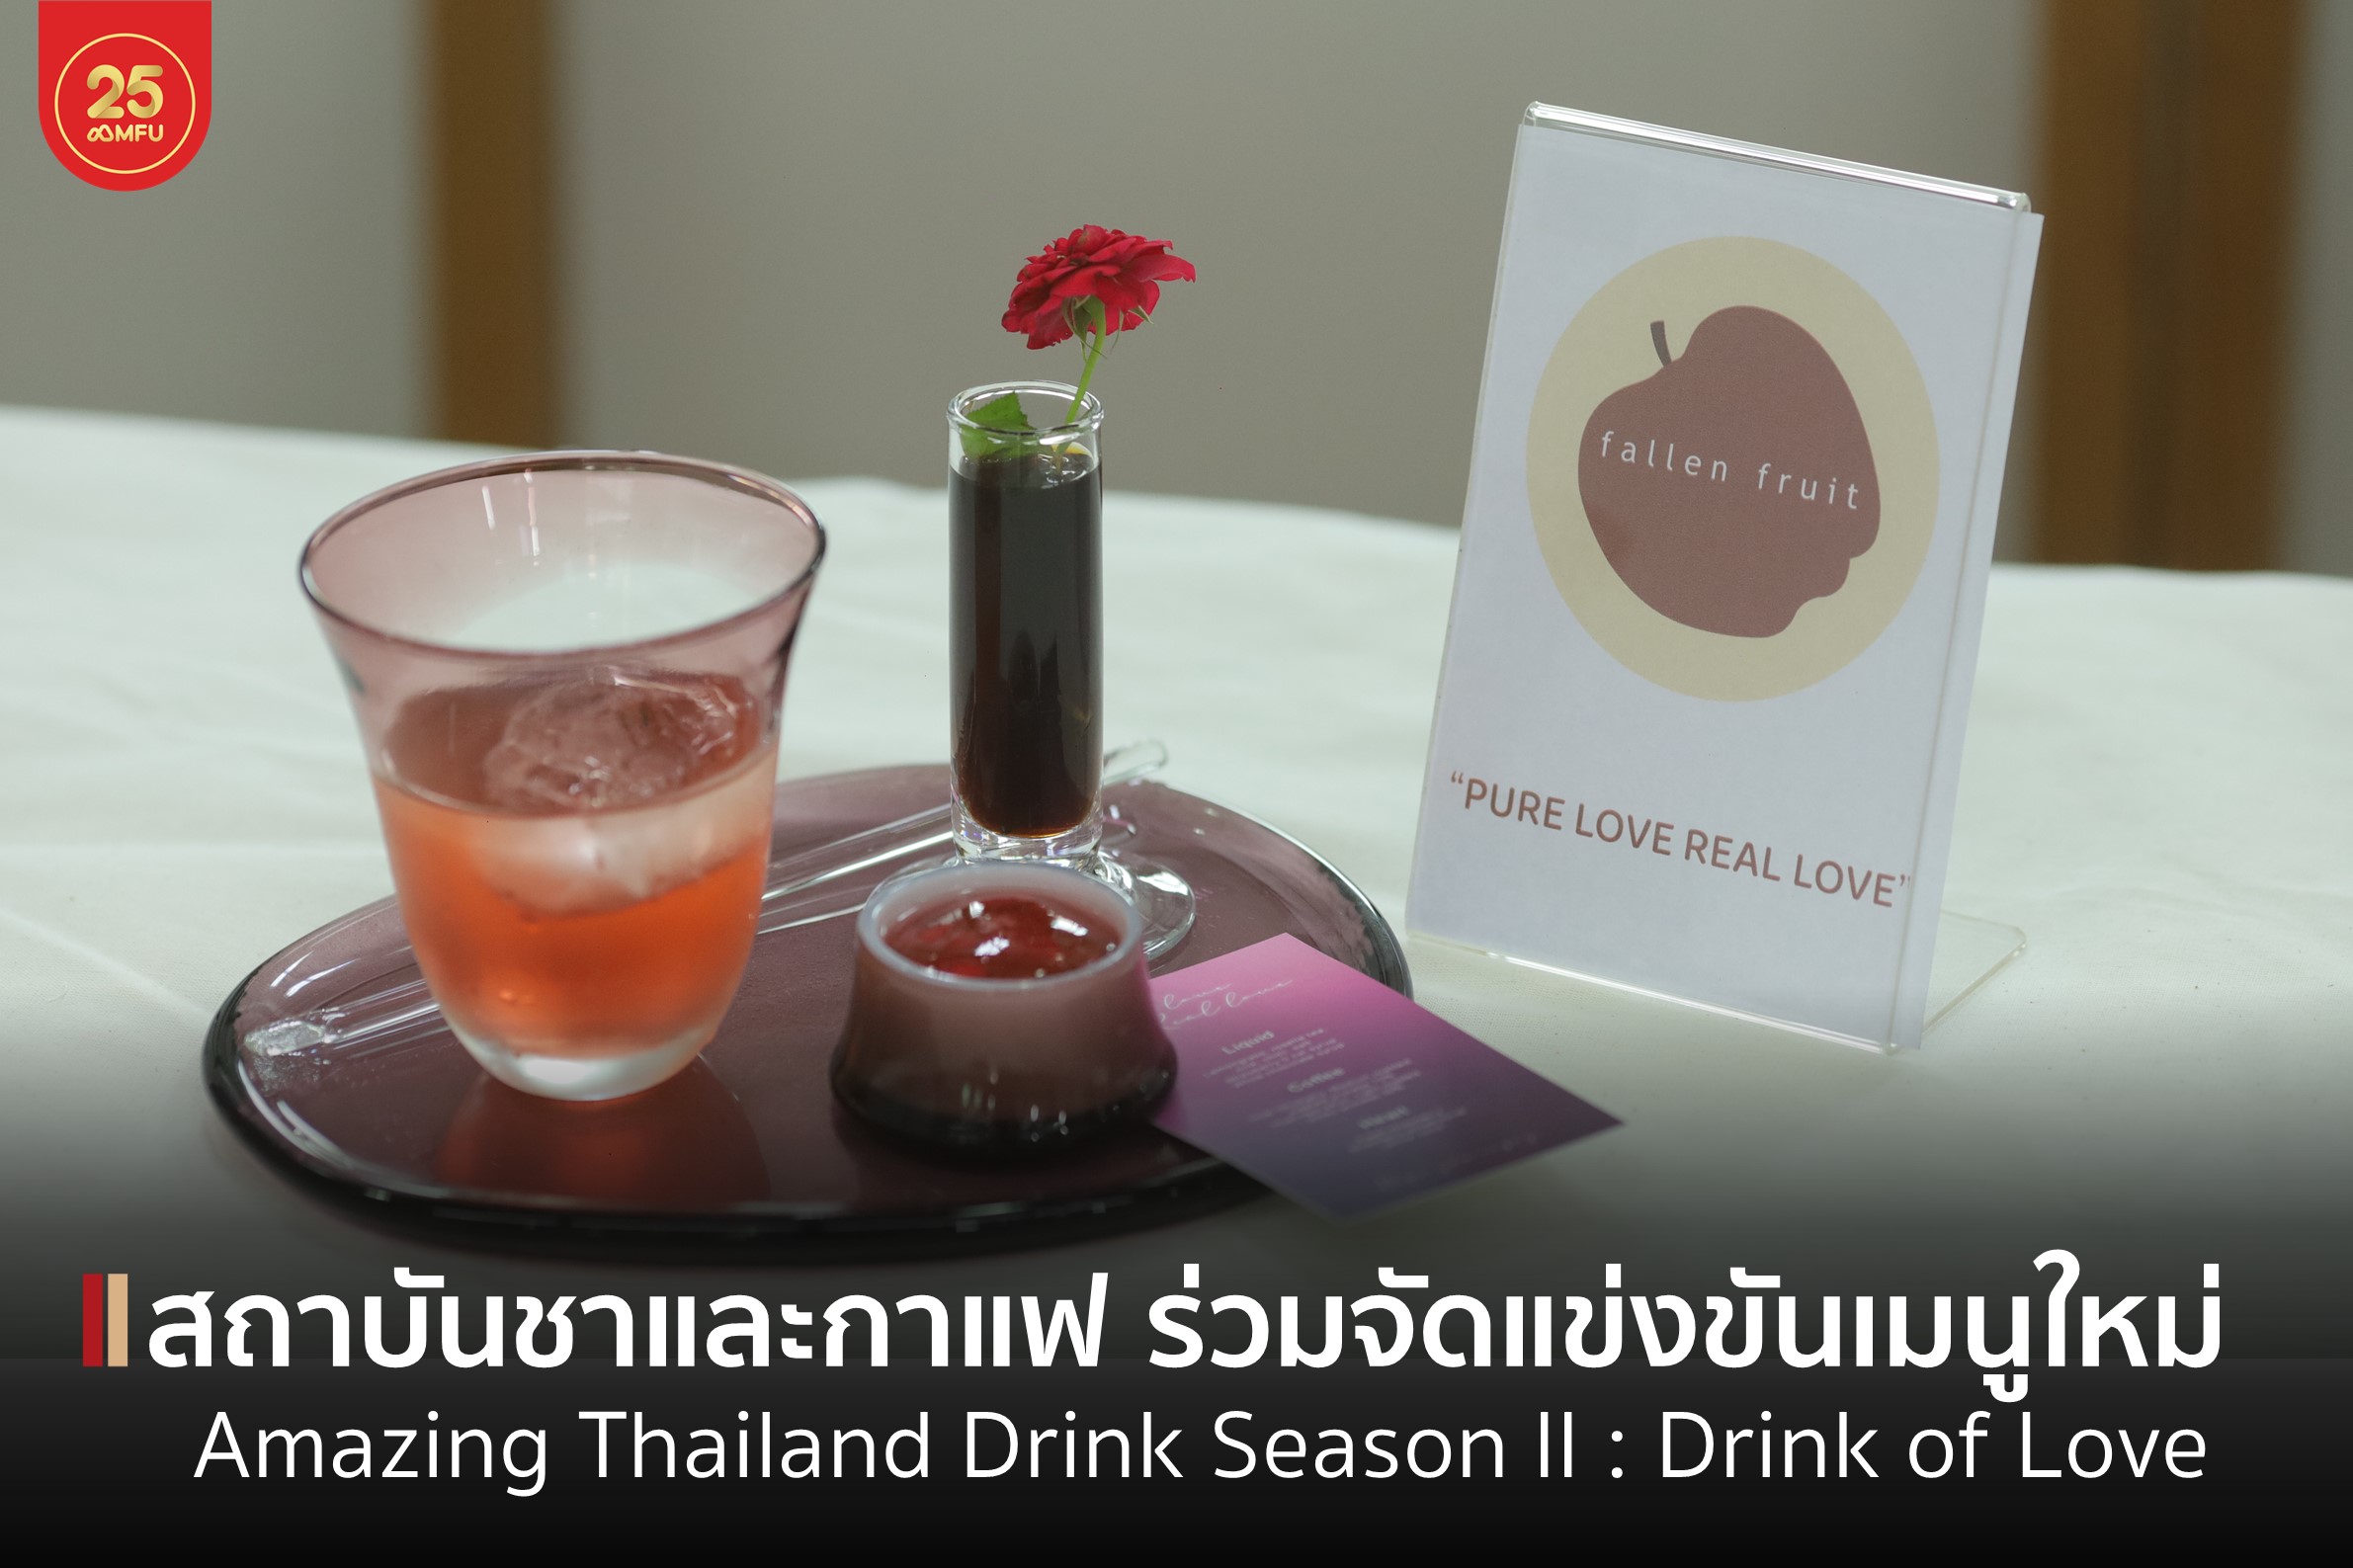 สถาบันชาและกาแฟ ร่วมจัดกิจกรรมการแข่งขันเครื่องดื่มกาแฟและชาล้านนาตะวันออก Amazing Thailand Drink Season II